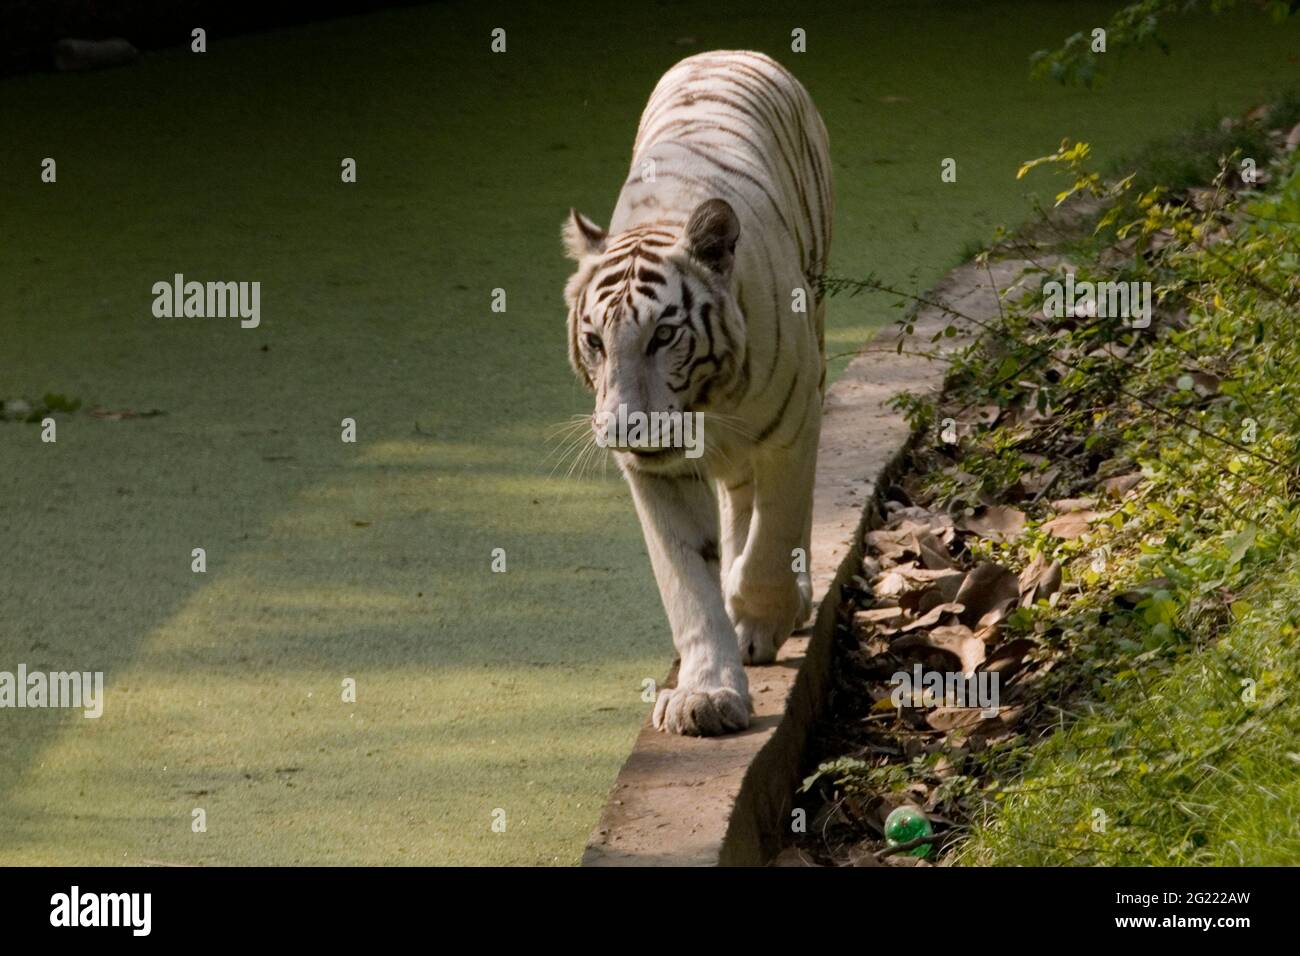 La tigre indiana bianca cammina attraverso una prateria aperta allo zoo nazionale di Nuova Delhi, India. Foto Stock